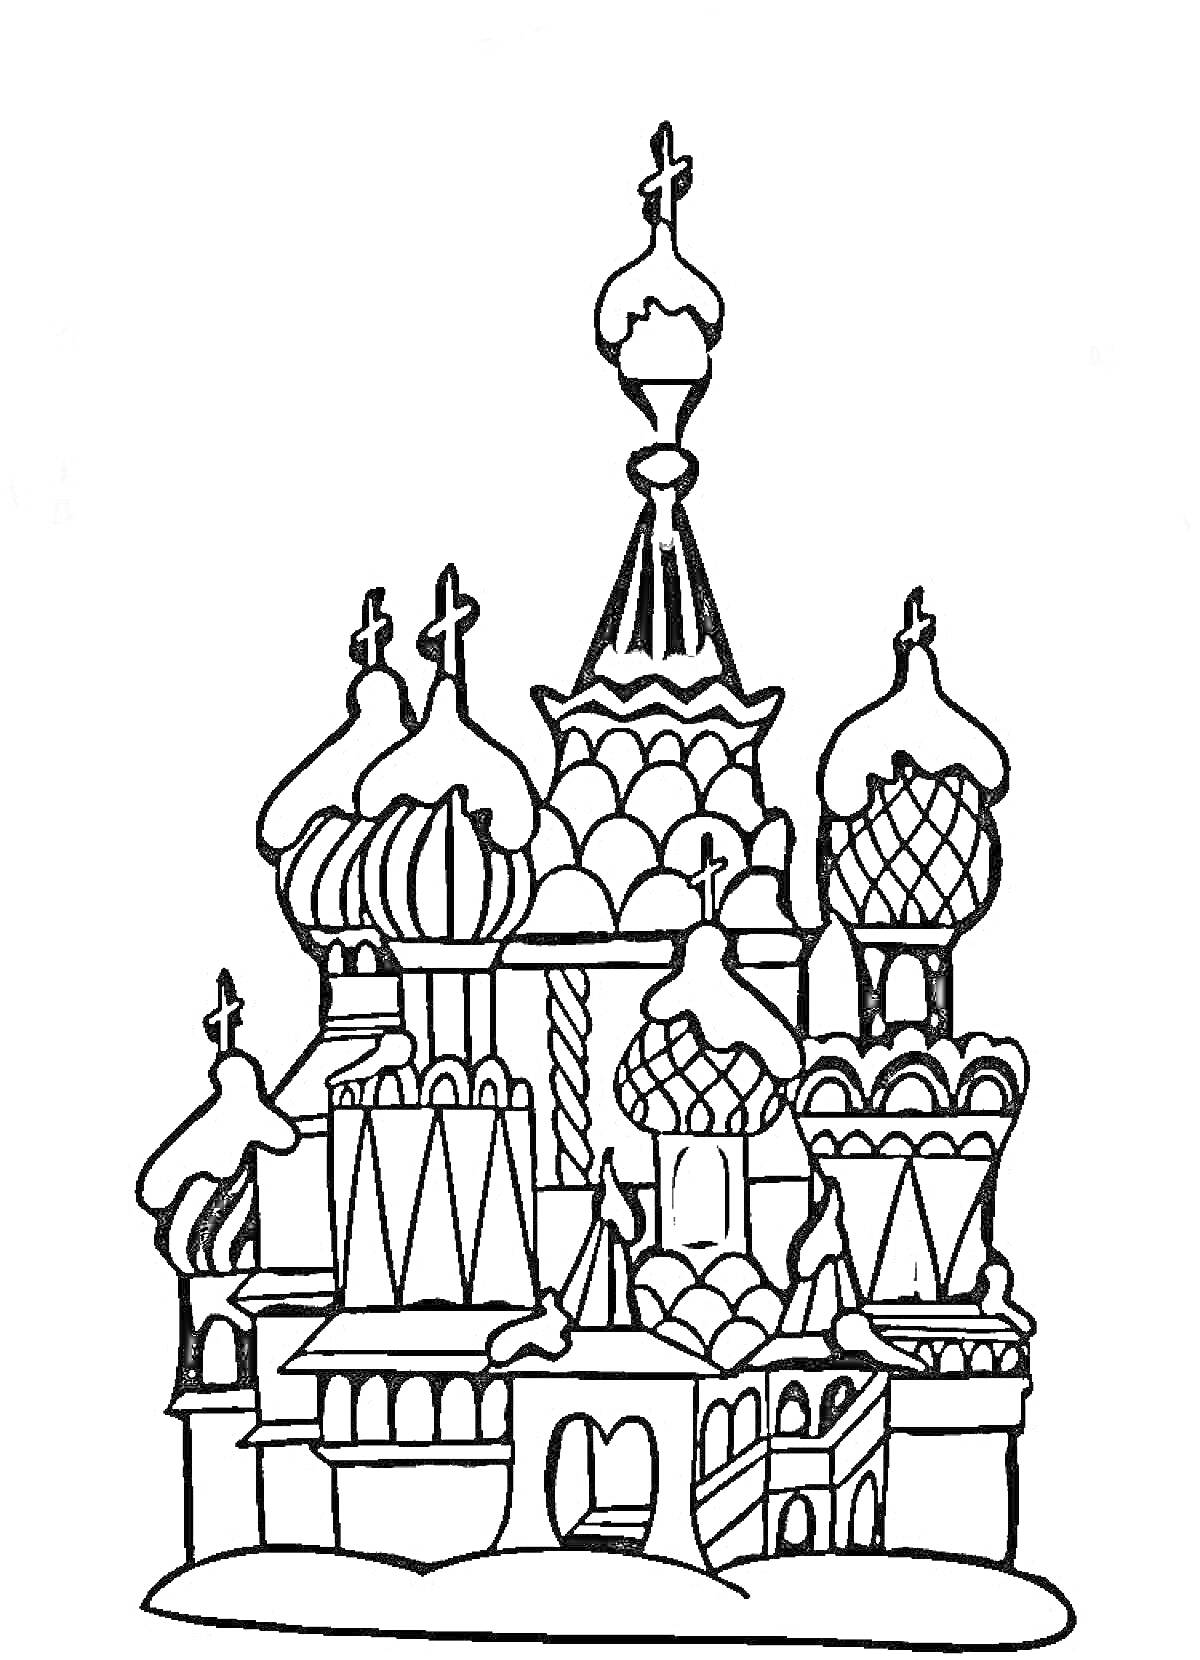 Раскраска Изображение Кремля с башнями и куполами